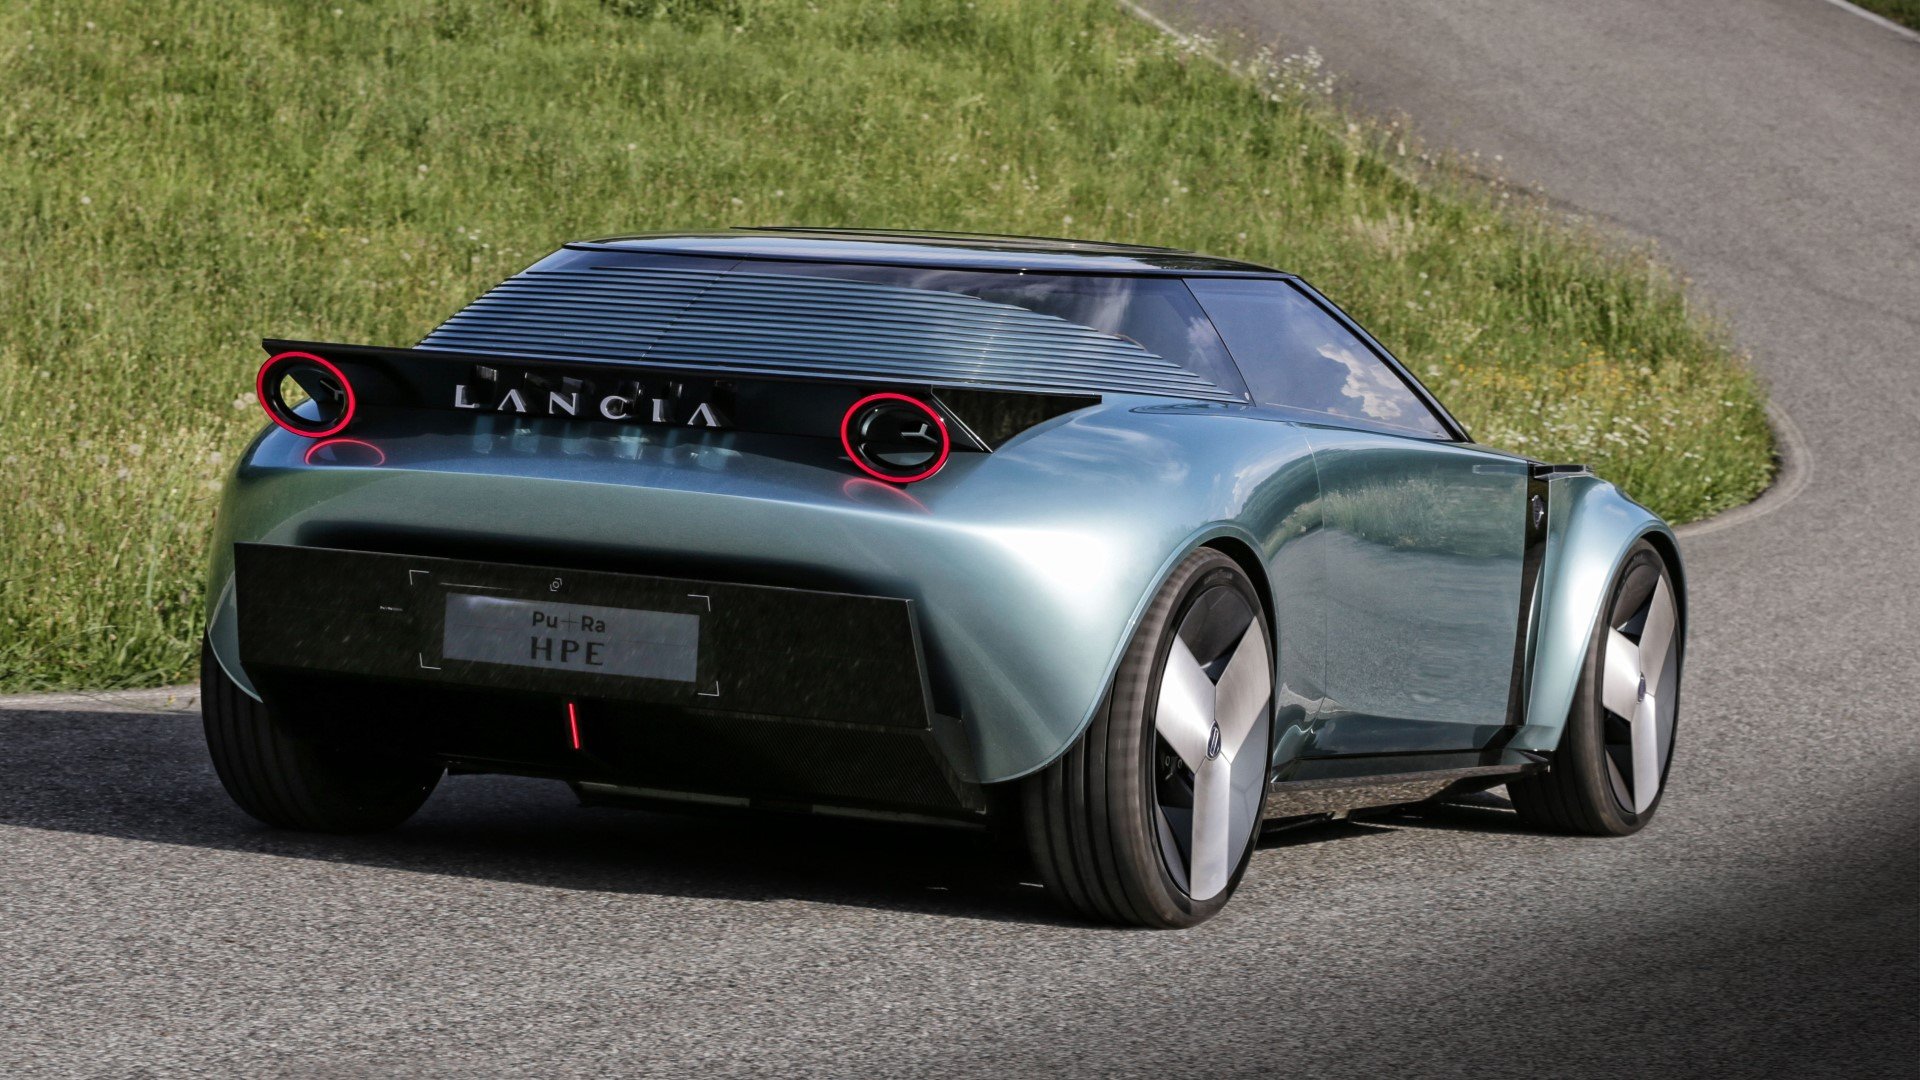 Πάμε μία... βόλτα με την διαστημική Lancia Pu+Ra HPE Concept!